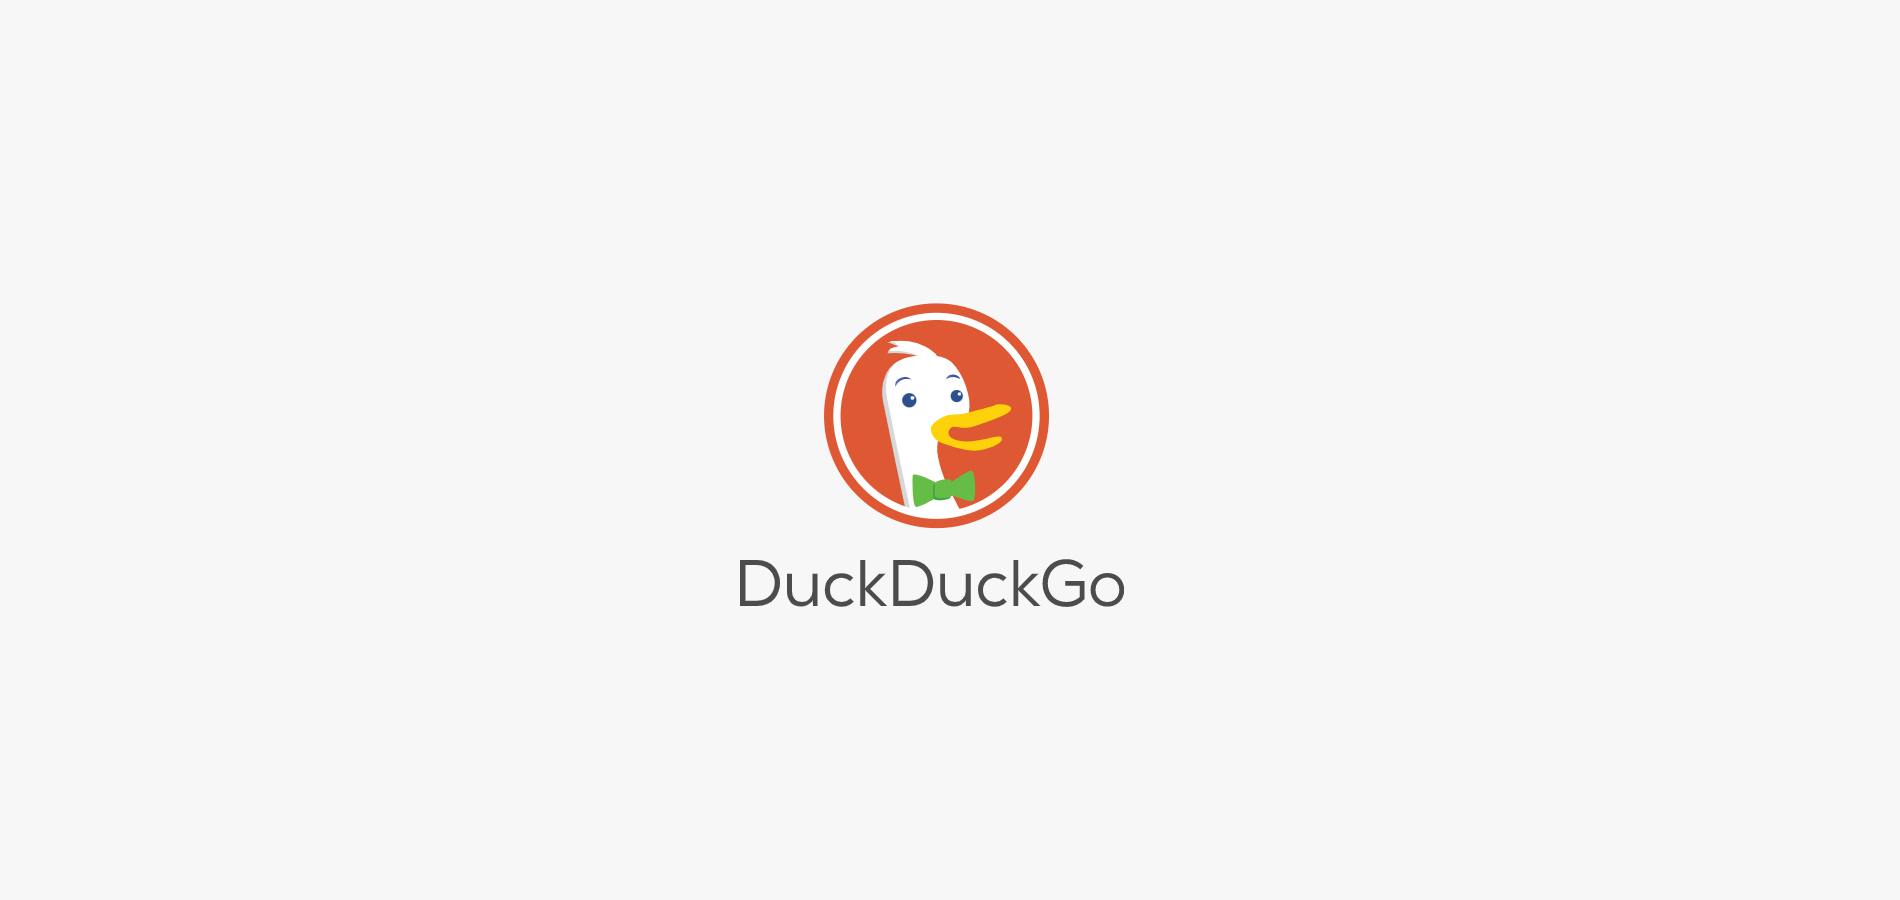 DuckDuckGo выдаст ответ на вопрос по информации из Википедии